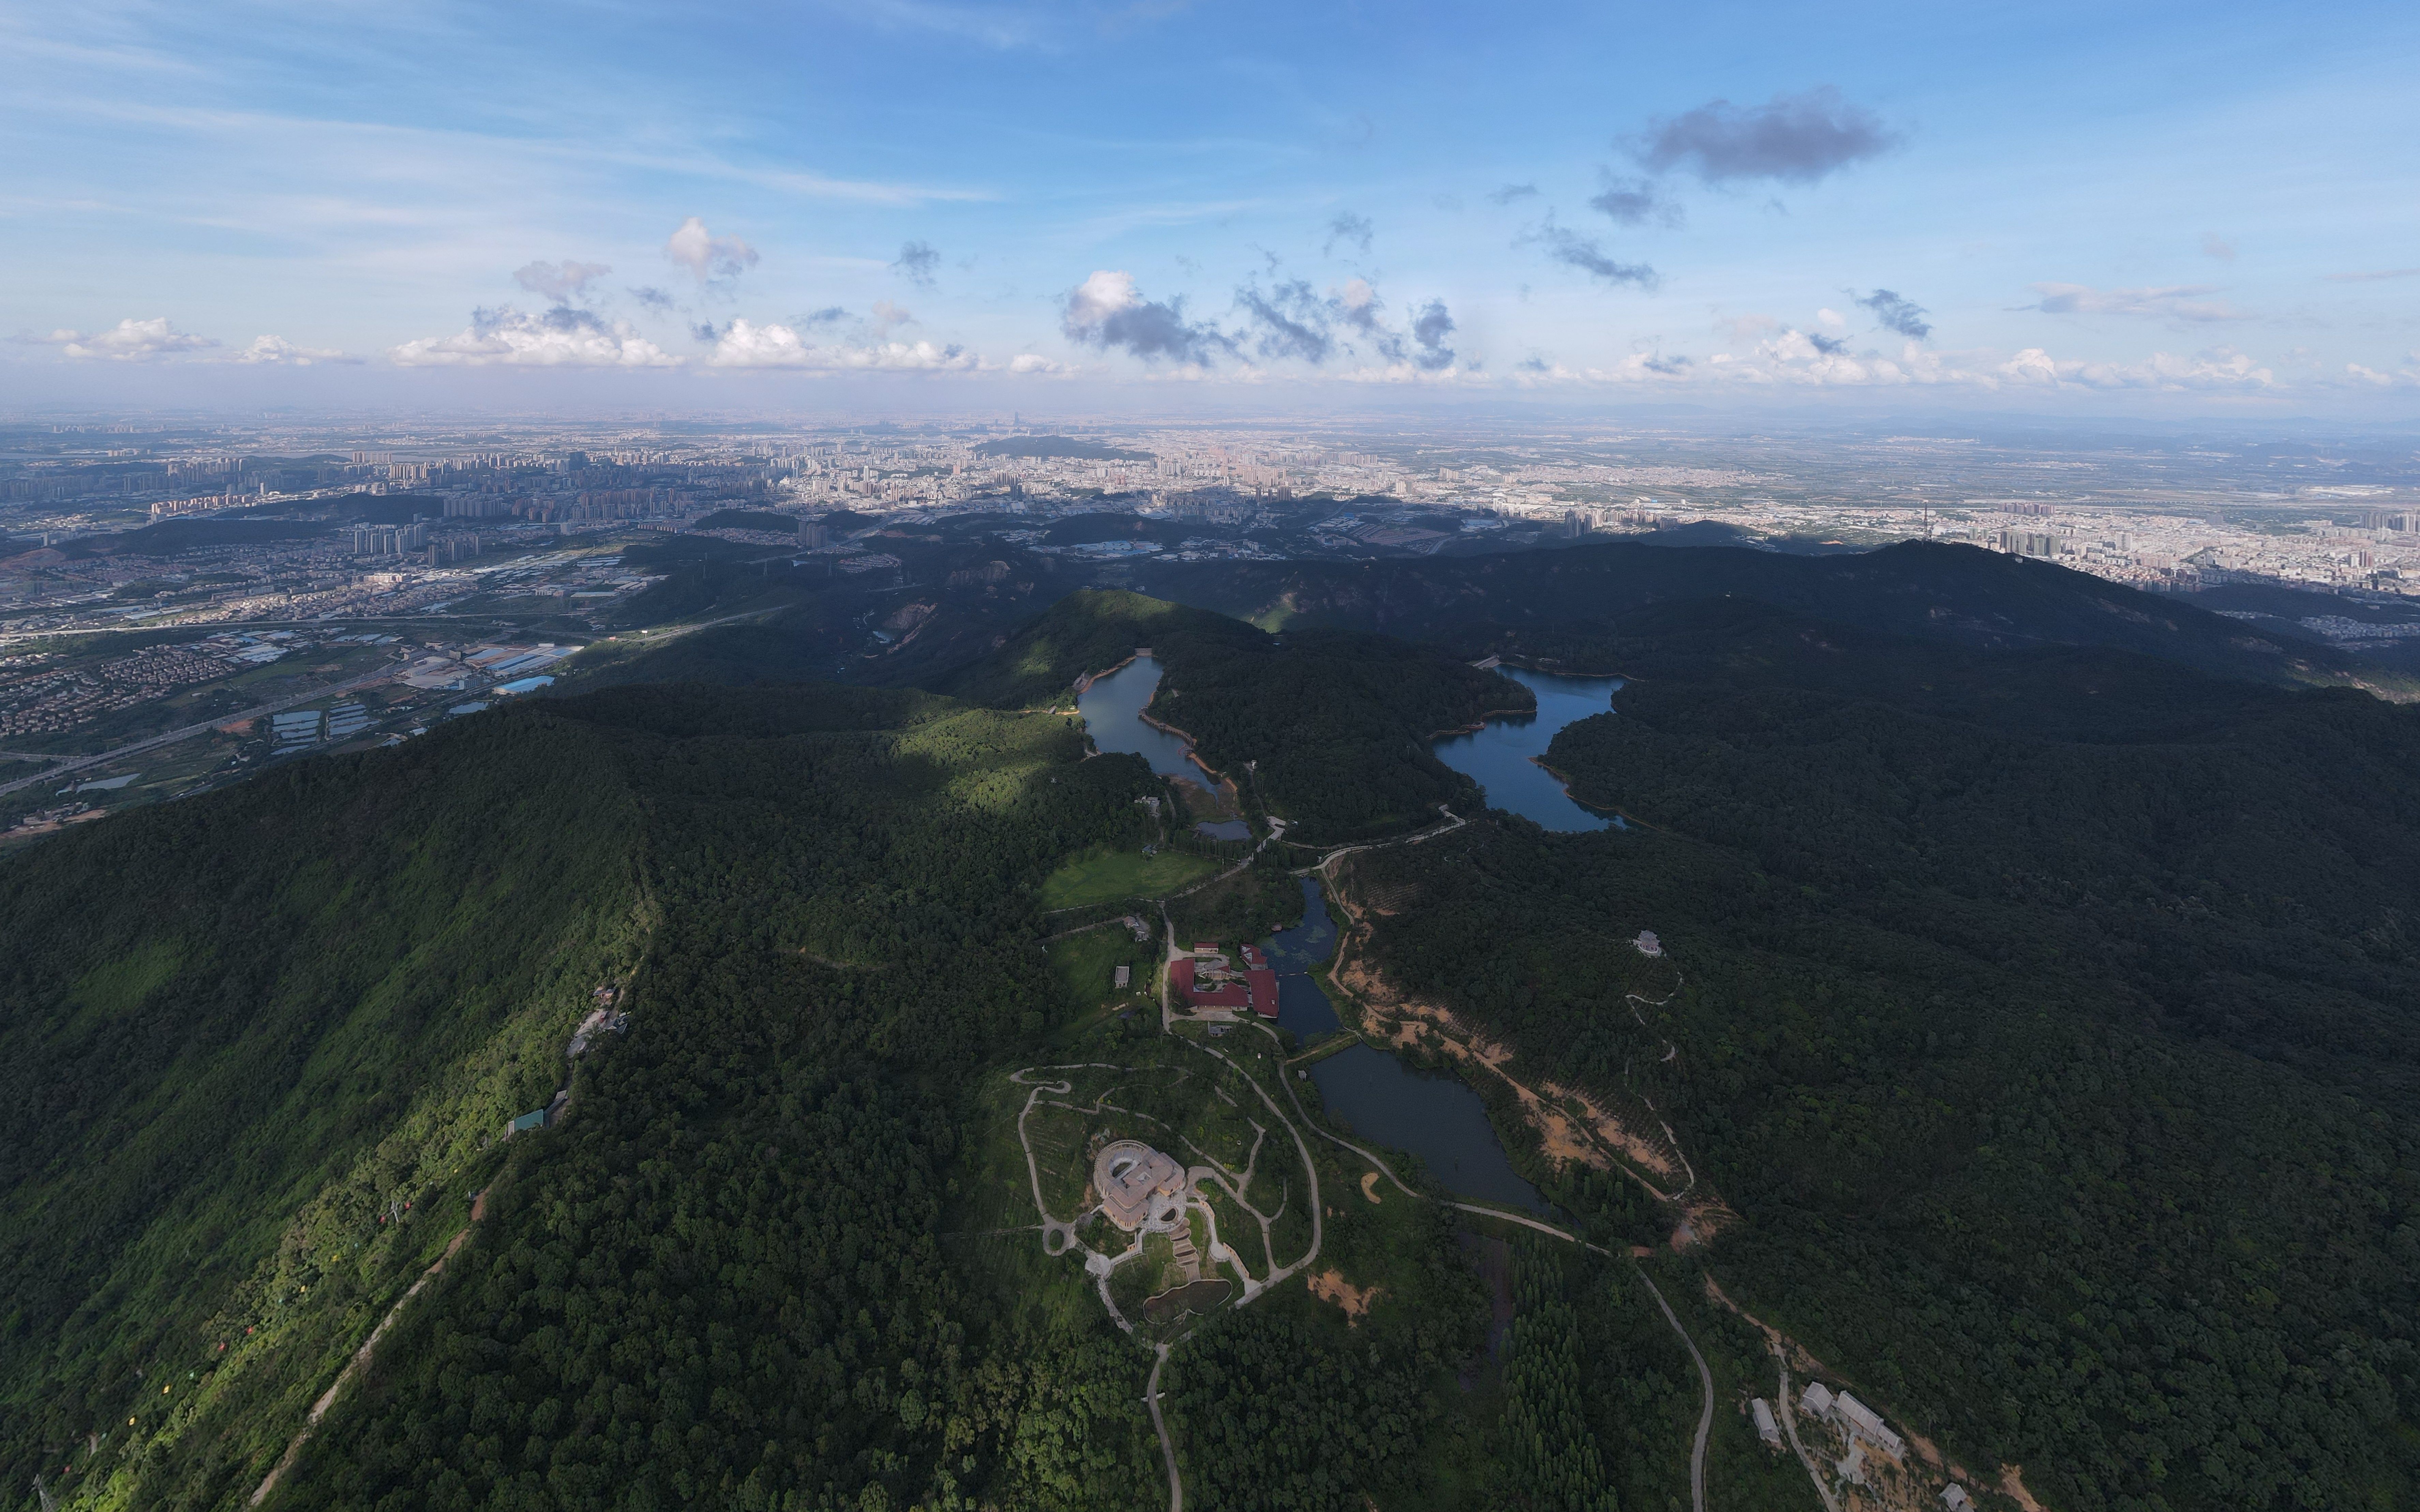 圭峰山全景图图片